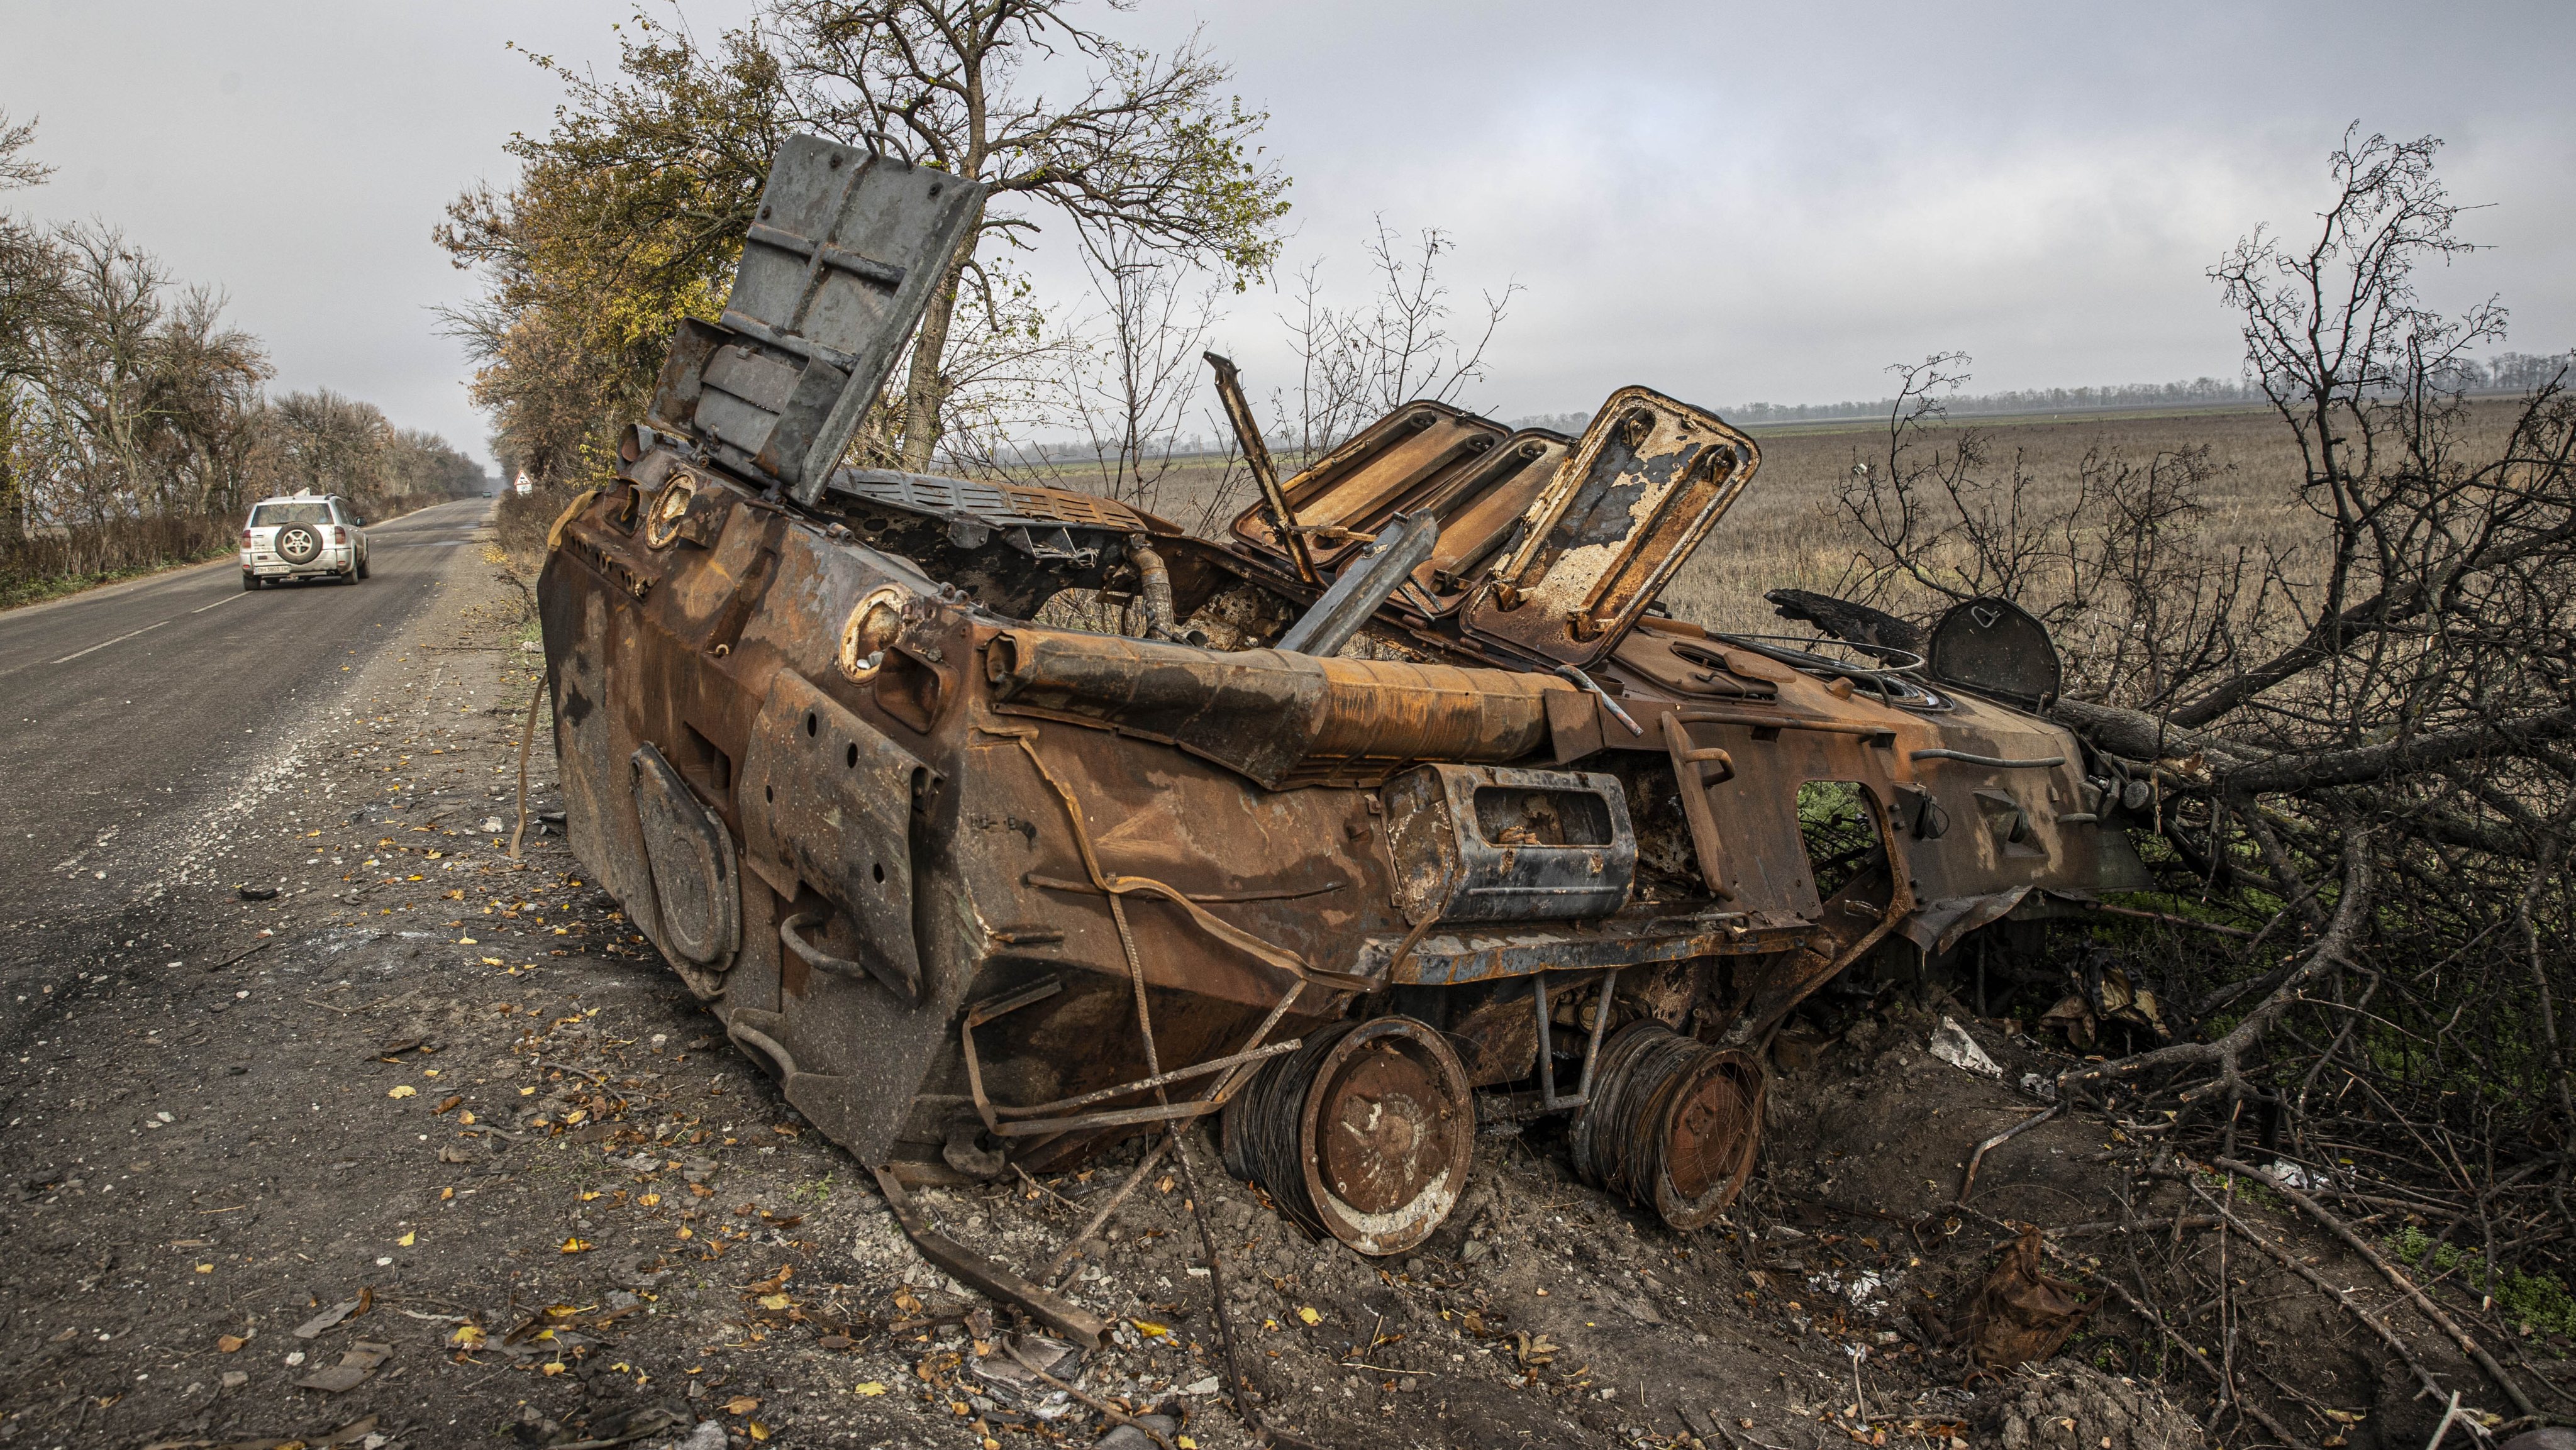 Recently recaptured villages of Kherson Oblast, Ukraine